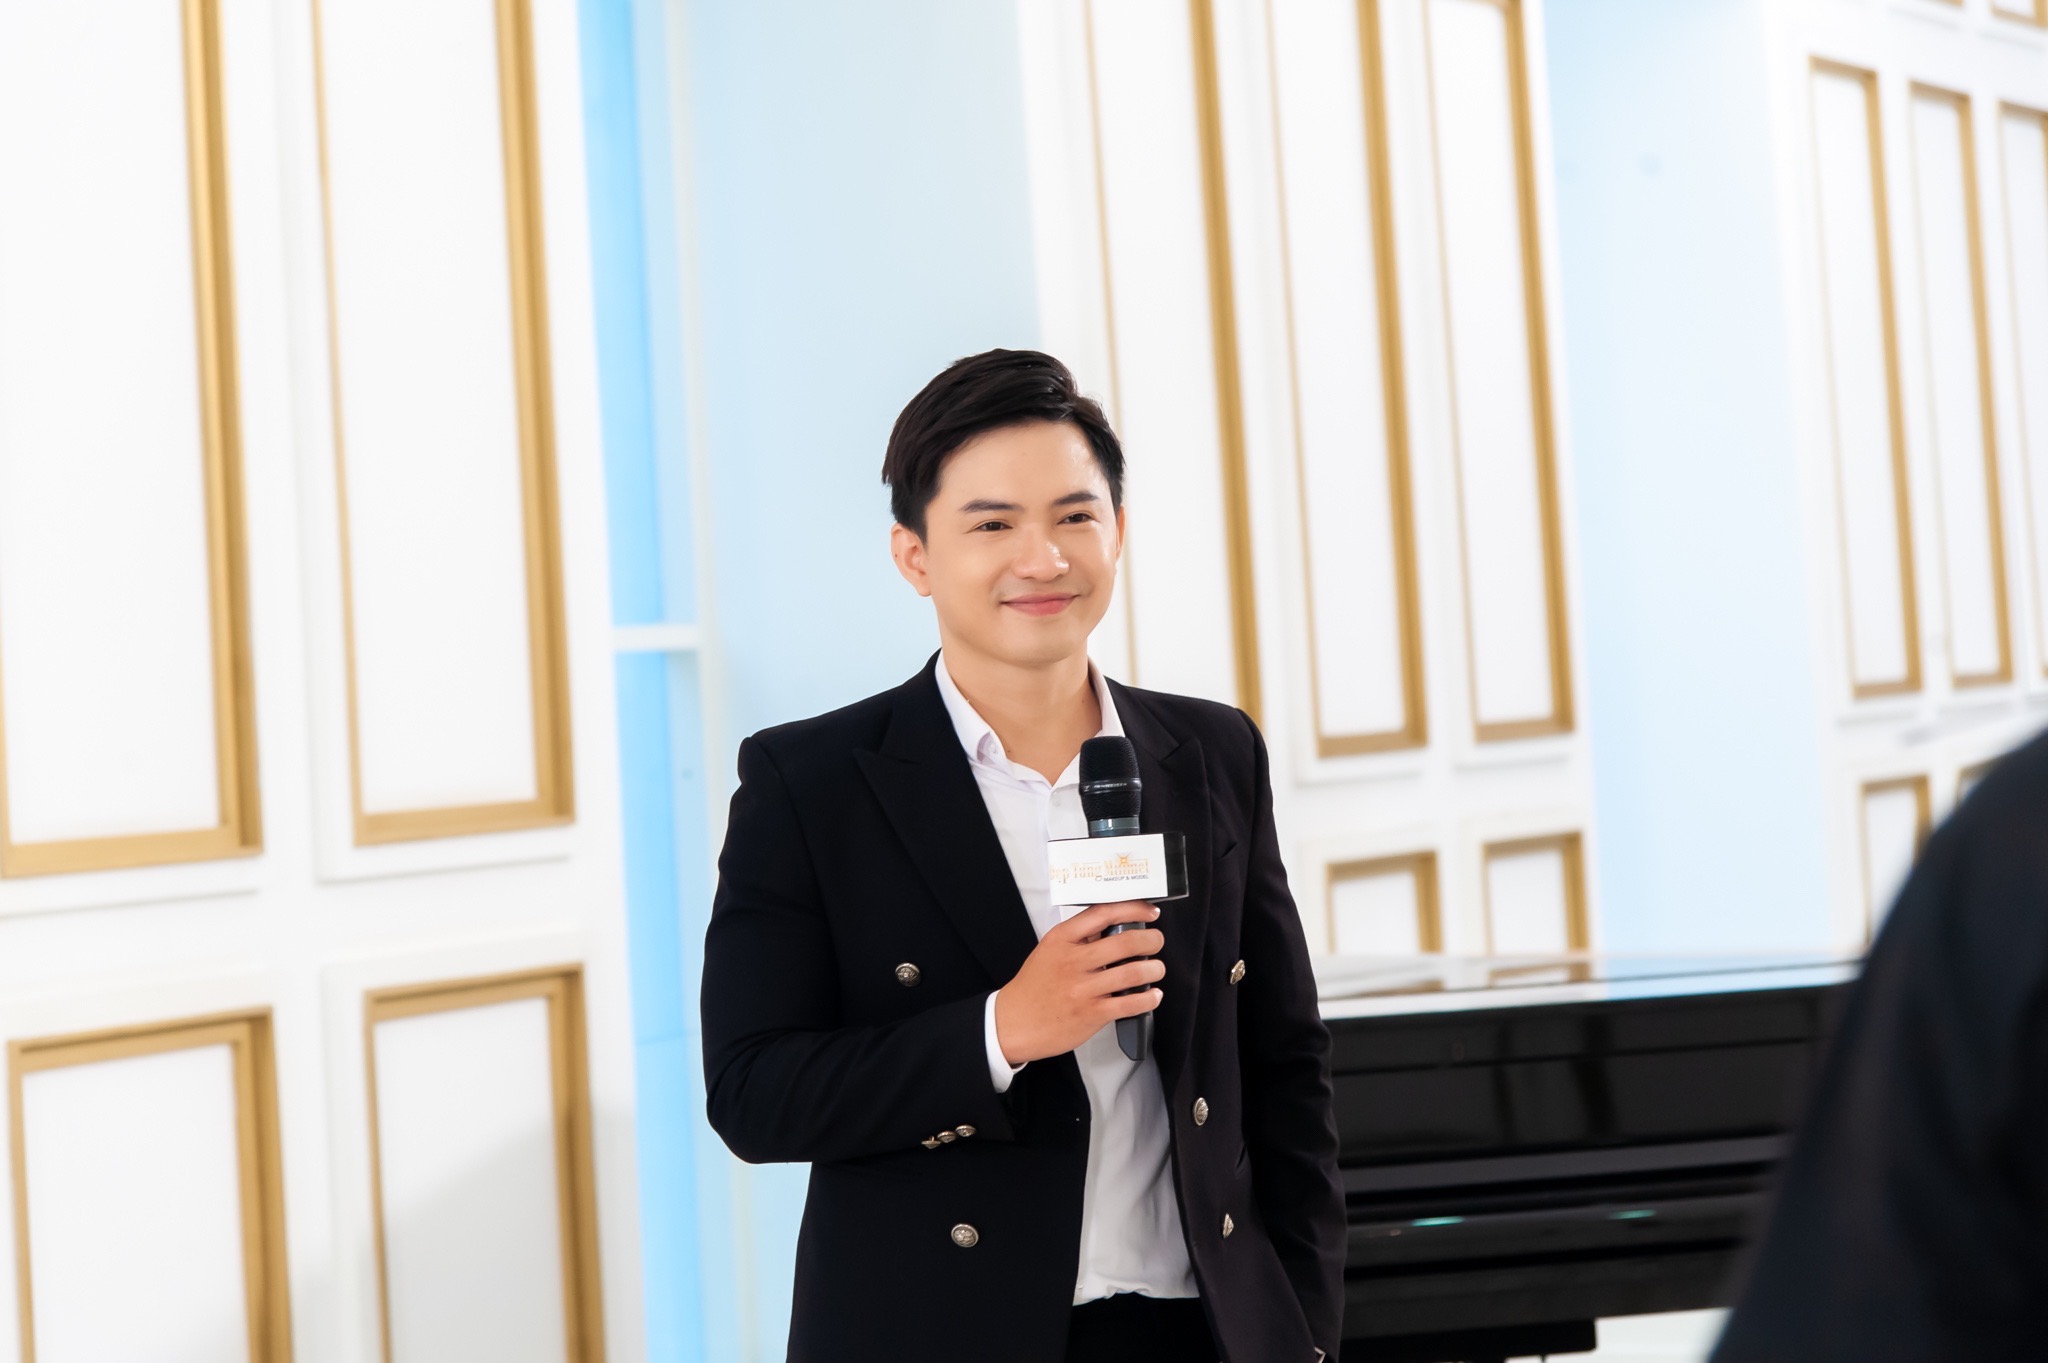 Mc Hoàng Vĩnh đảm nhận vai trò host show thực tế Đẹp Từng Milimet.